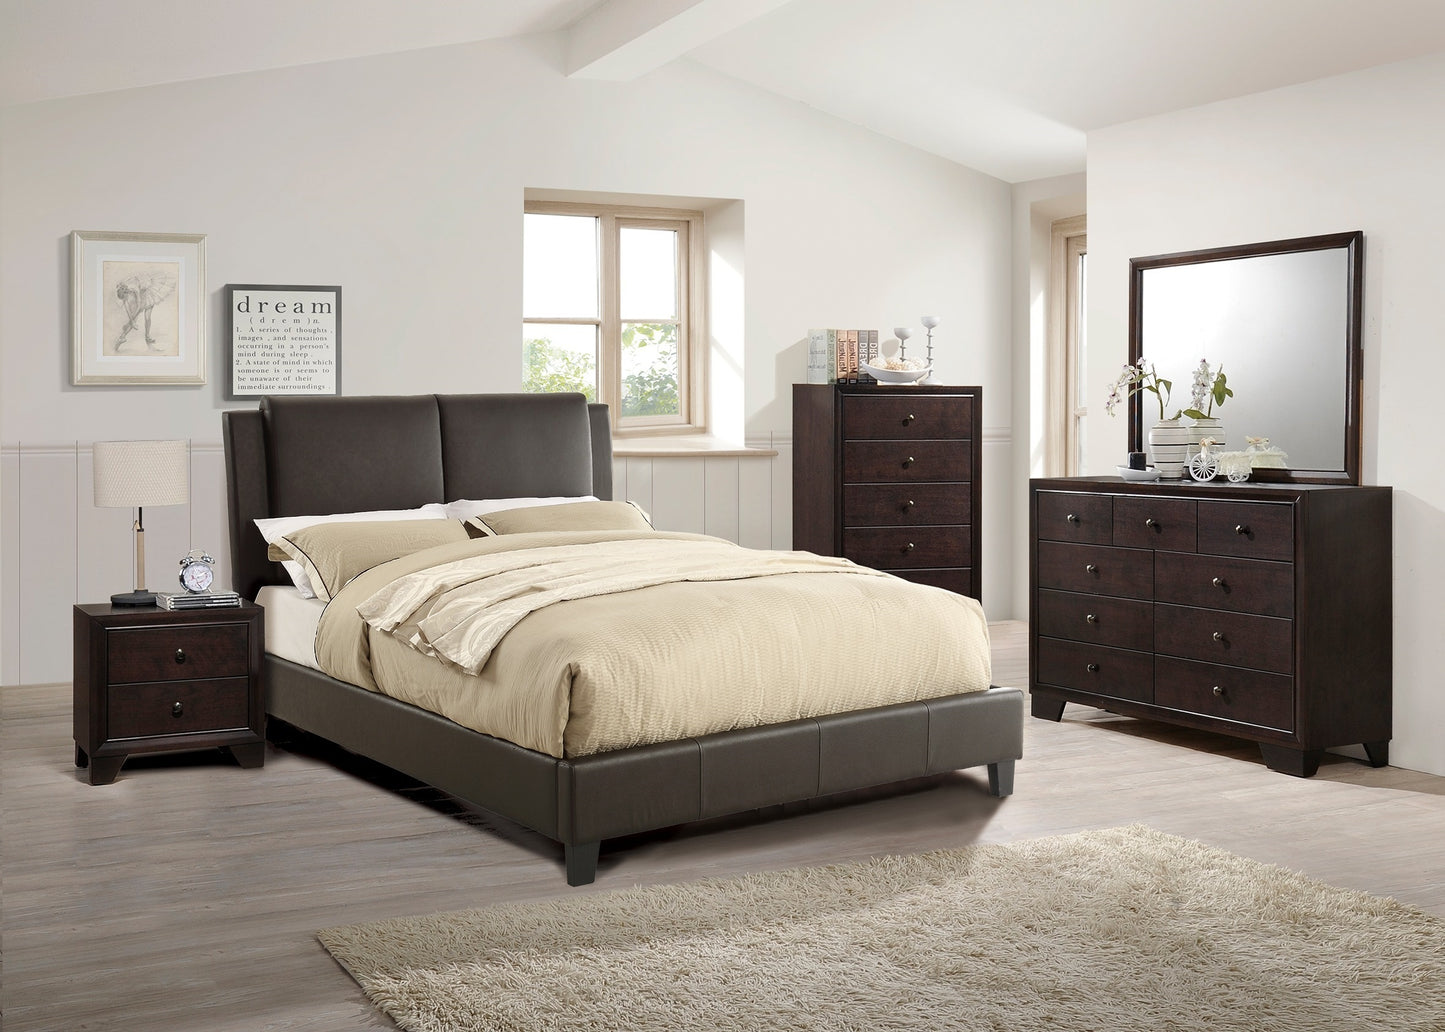 Modern Bedroom Nightstand Brown Color Drawers